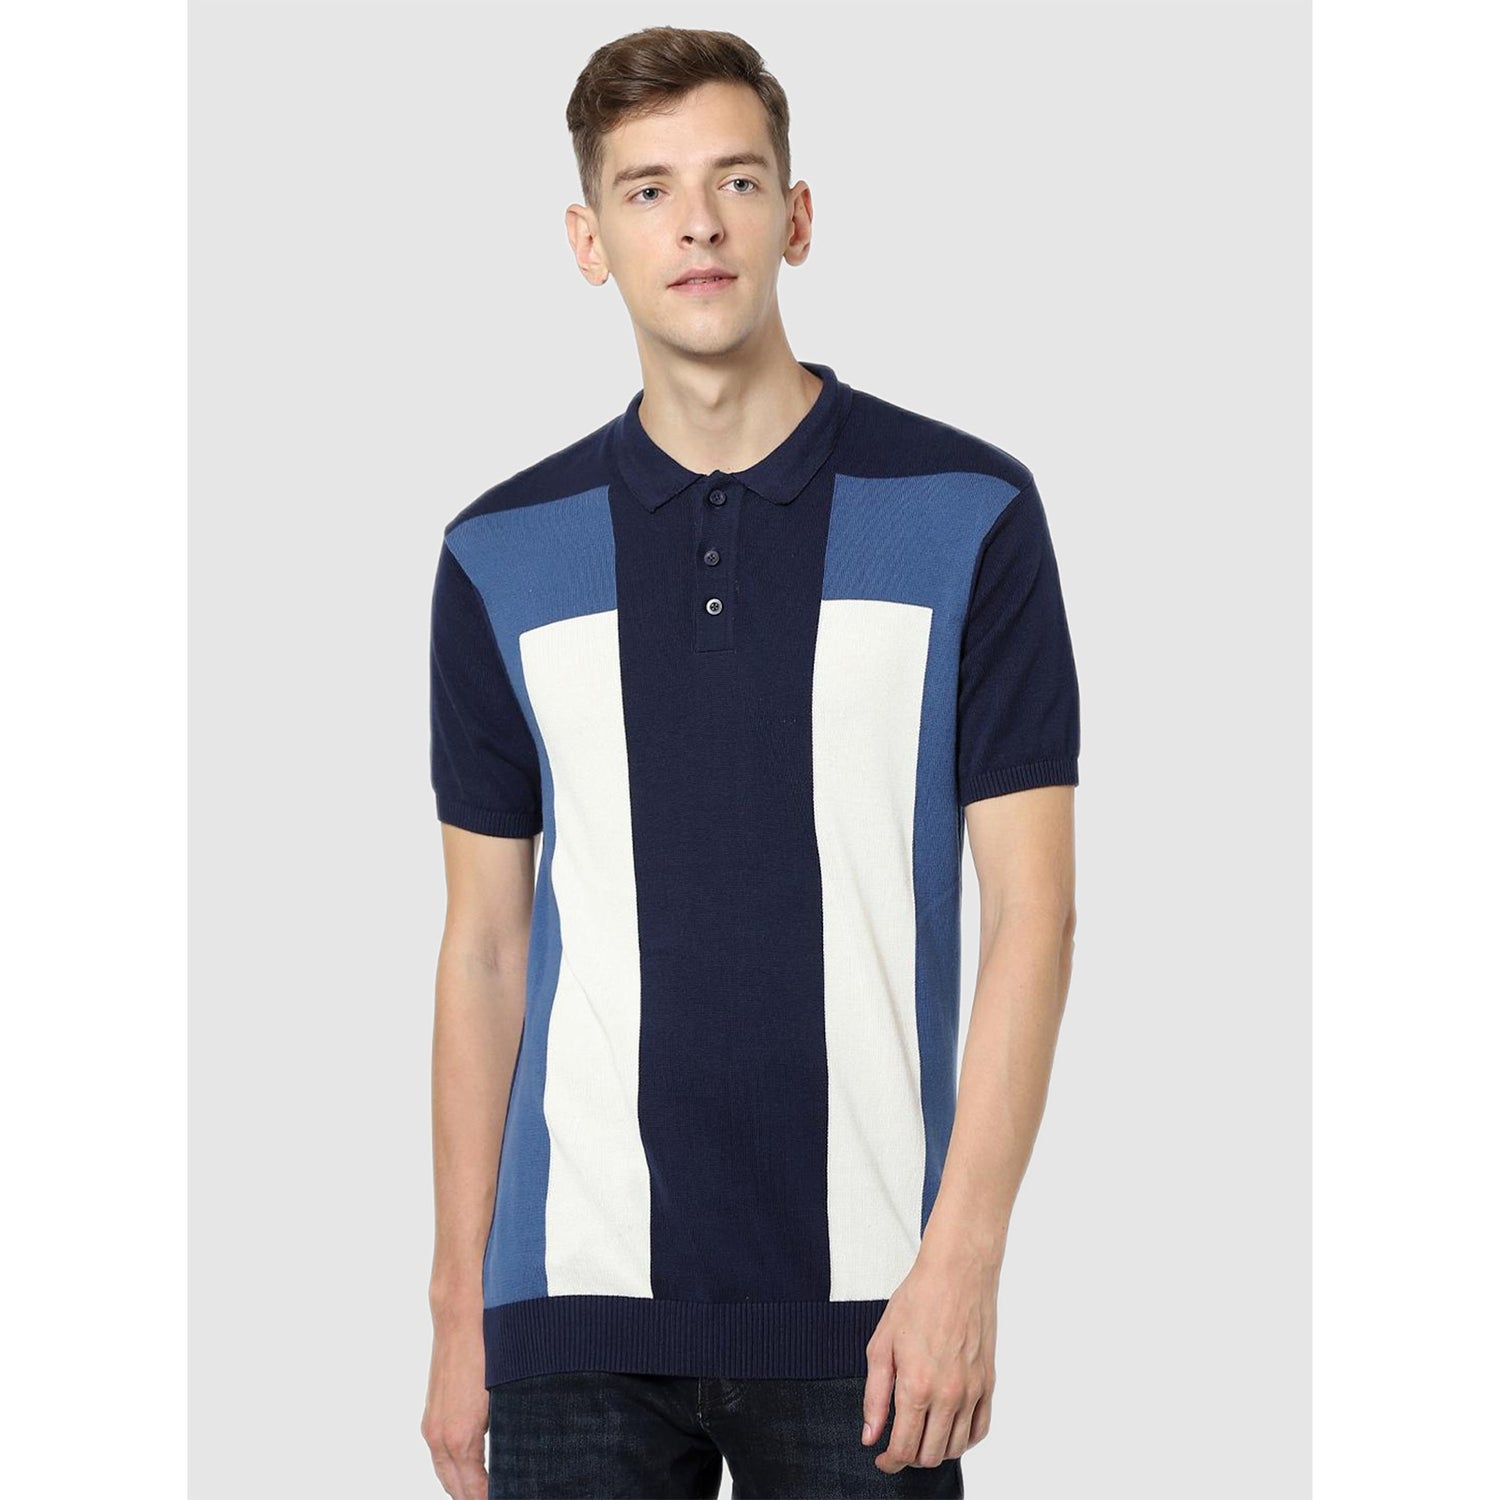 Navy Blue Colourblocked Polo Collar T-shirt (CEBLOCK)